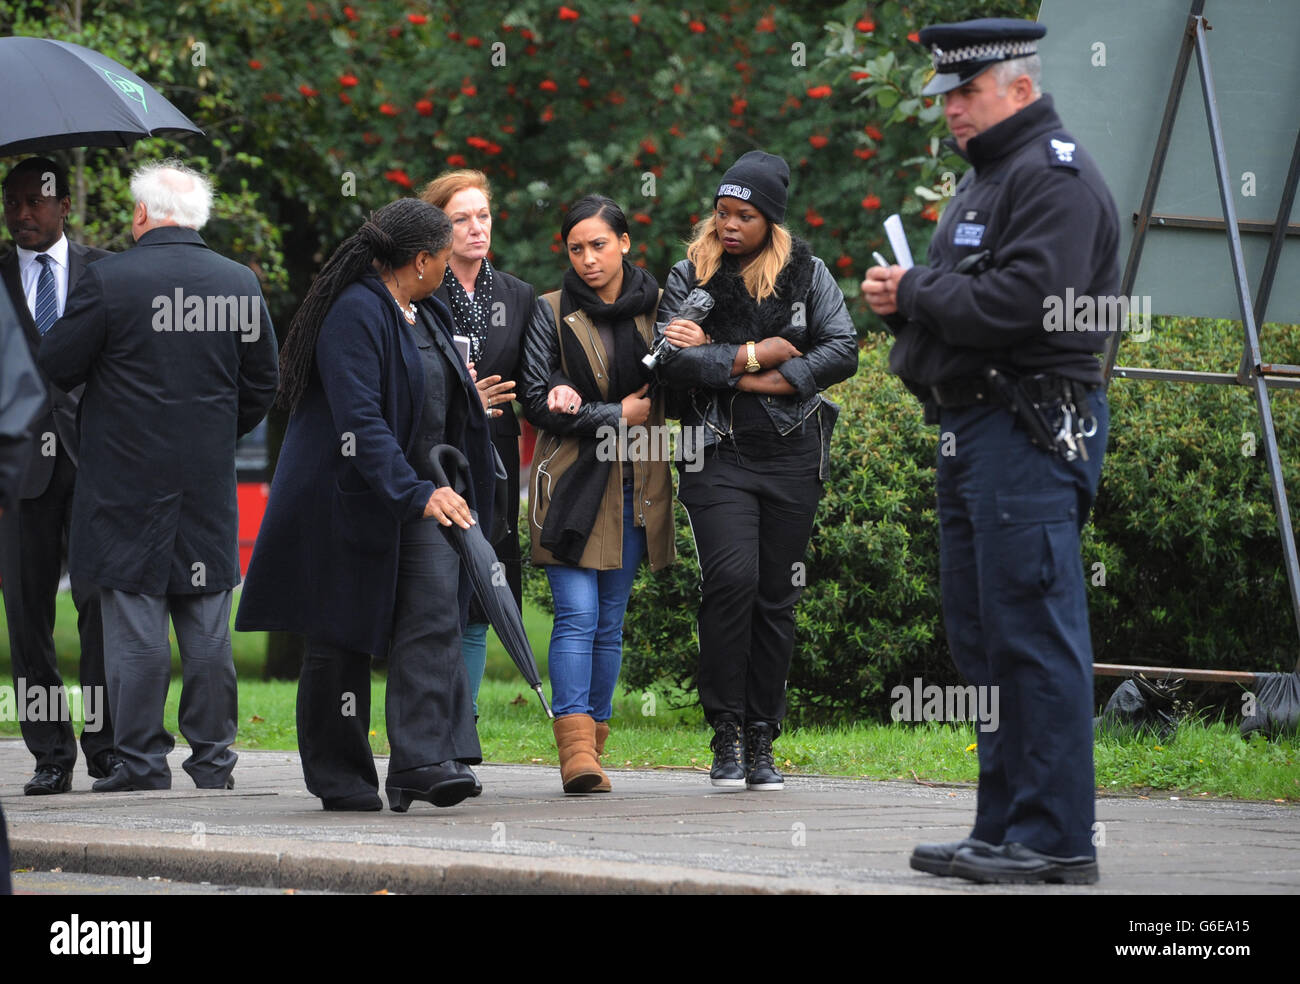 La famiglia e gli amici di Mark Duggan guardano su come la giuria nella conquista della sua morte visita la scena della sua sparatoria a Tottenham, a nord di Londra. Foto Stock